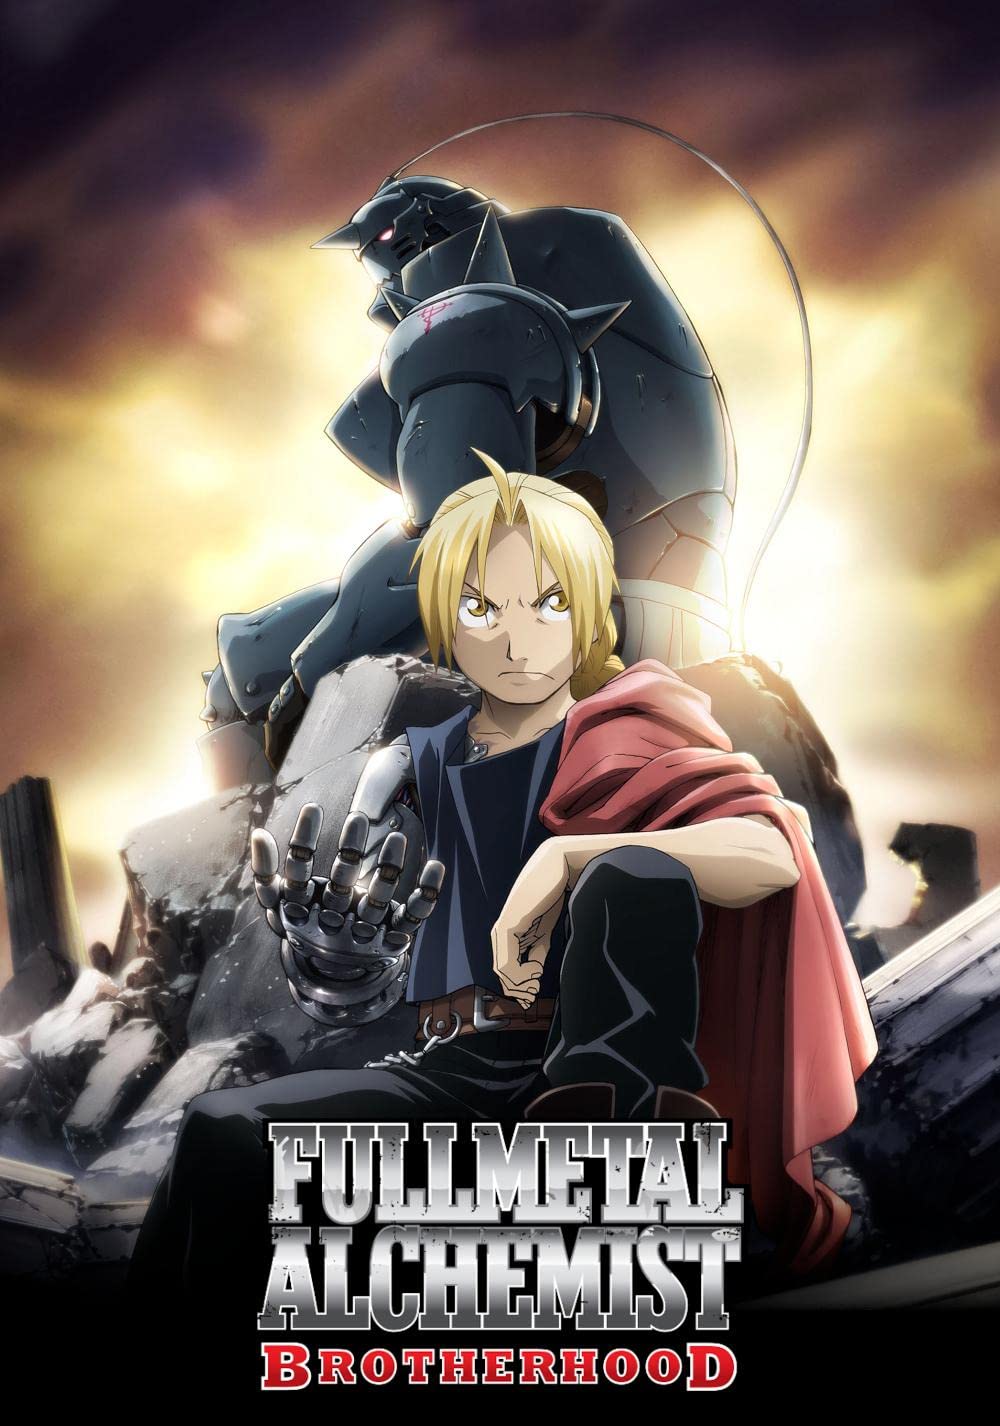 ดูหนังออนไลน์ Fullmetal Alchemist ss3 (2009)EP.2 แขนกลคนแปรธาตุ ภาค 3 ตอนที่ 2 (ซับไทย)